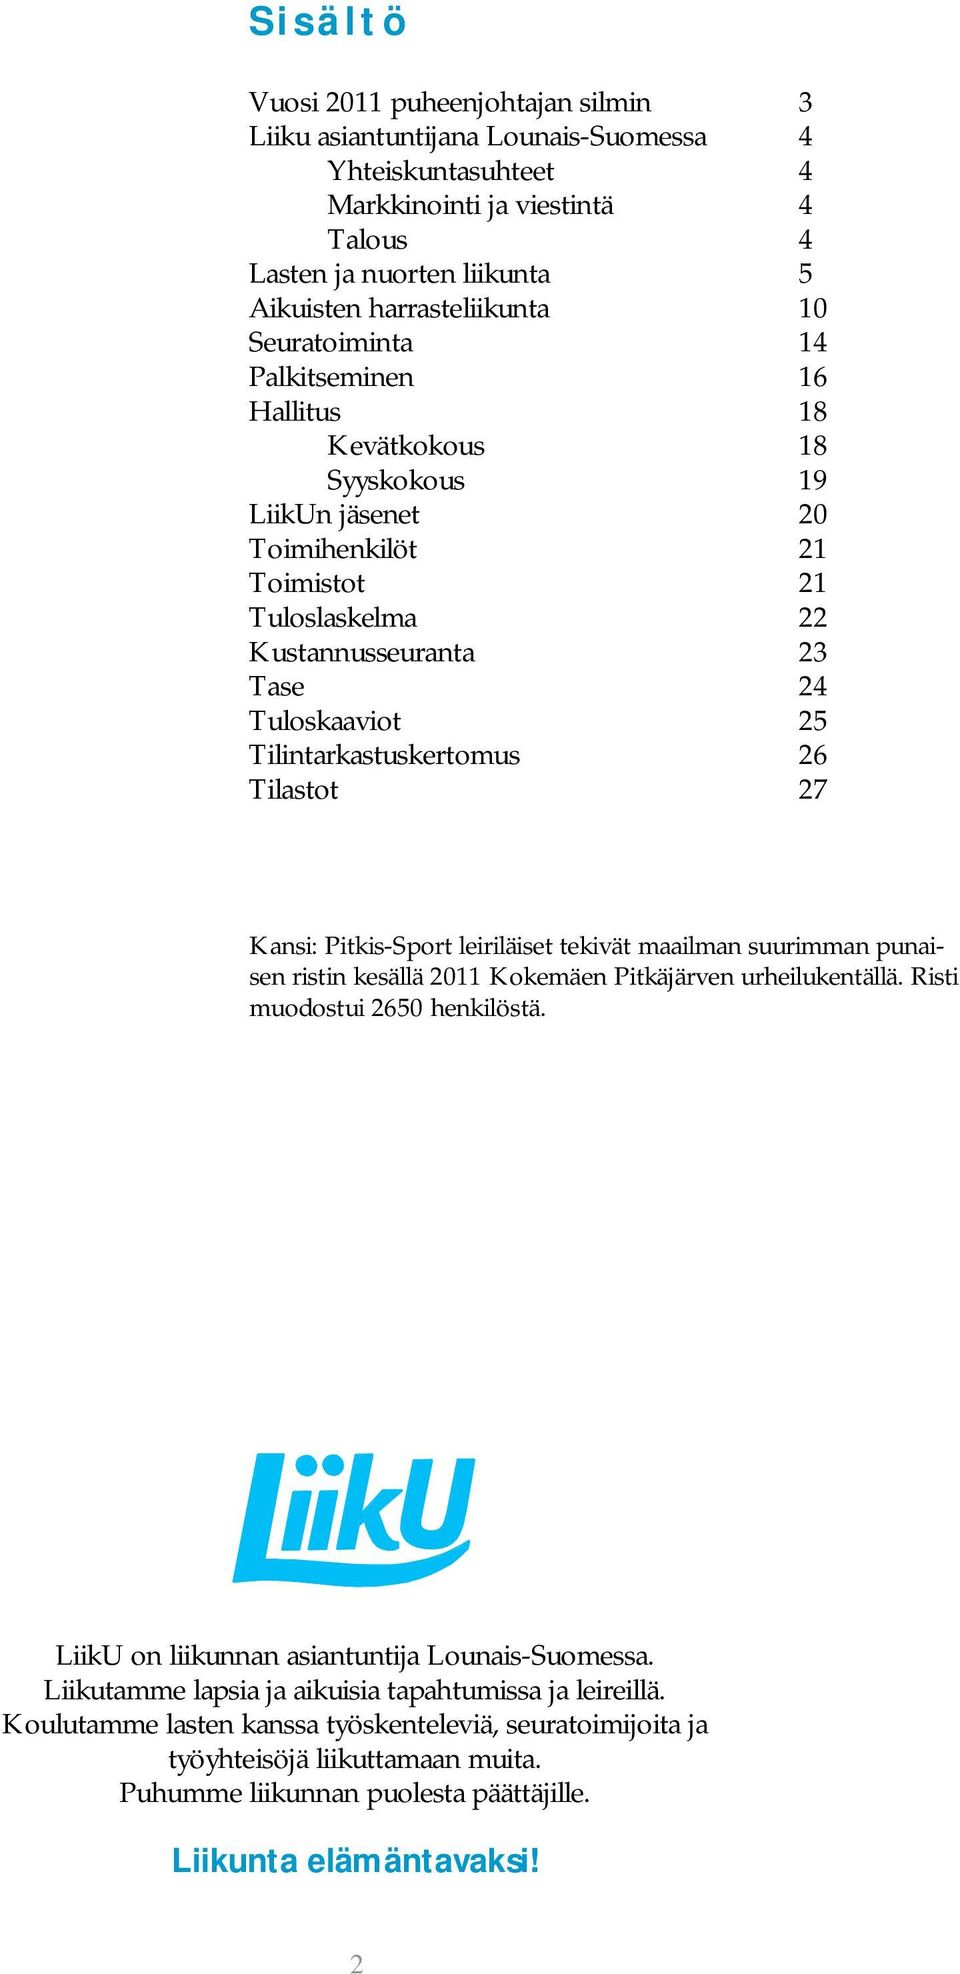 Tilintarkastuskertomus 26 Tilastot 27 Kansi: Pitkis-Sport leiriläiset tekivät maailman suurimman punaisen ristin kesällä 2011 Kokemäen Pitkäjärven urheilukentällä. Risti muodostui 2650 henkilöstä.